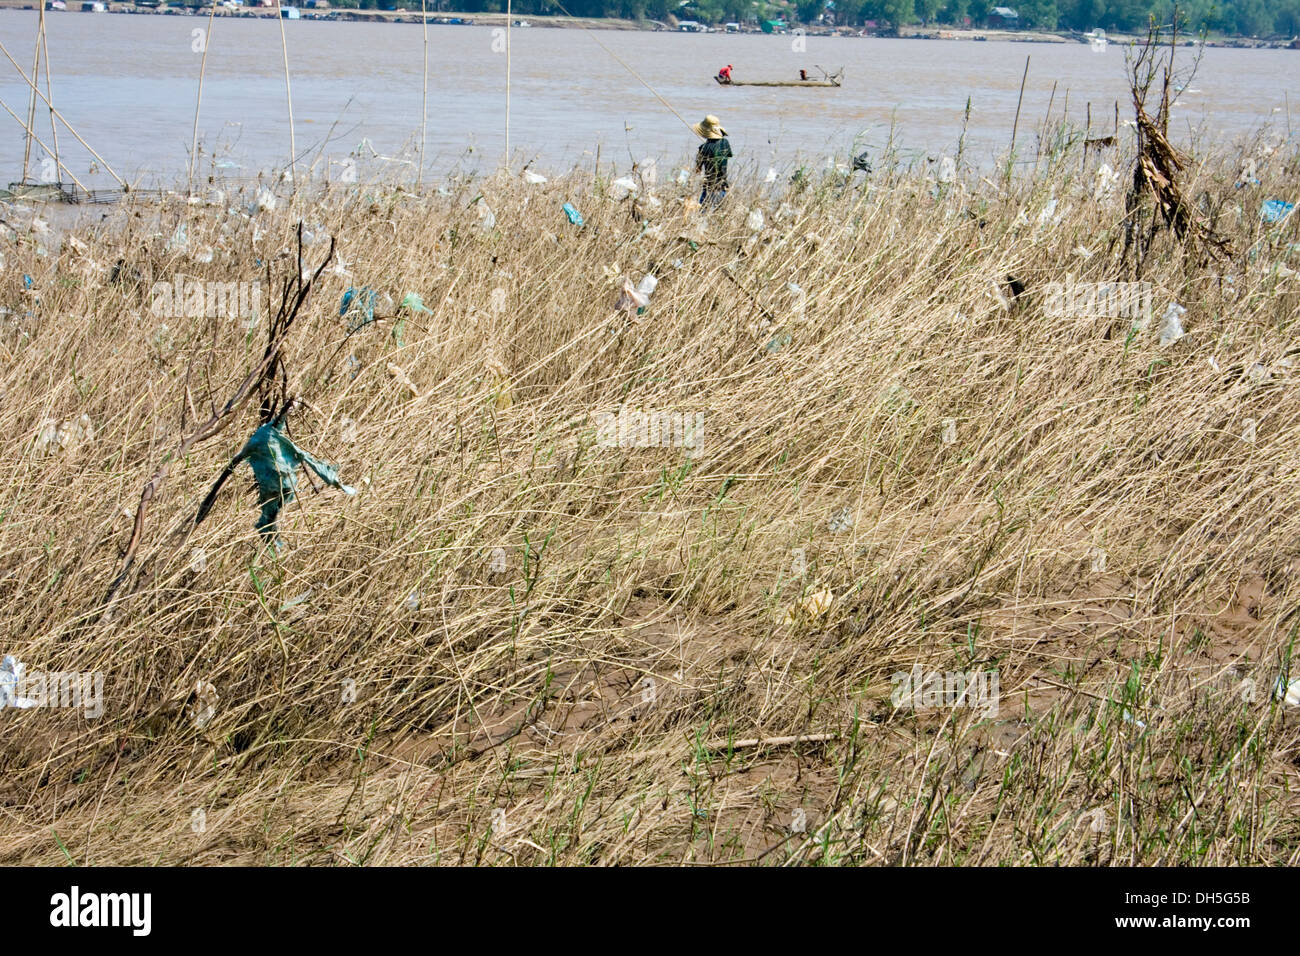 Un pêcheur est la pêche, près de sacs en plastique qui ont rassemblé dans les mauvaises herbes sur la rive du Mékong dans la région de Kampong Cham, au Cambodge. Banque D'Images